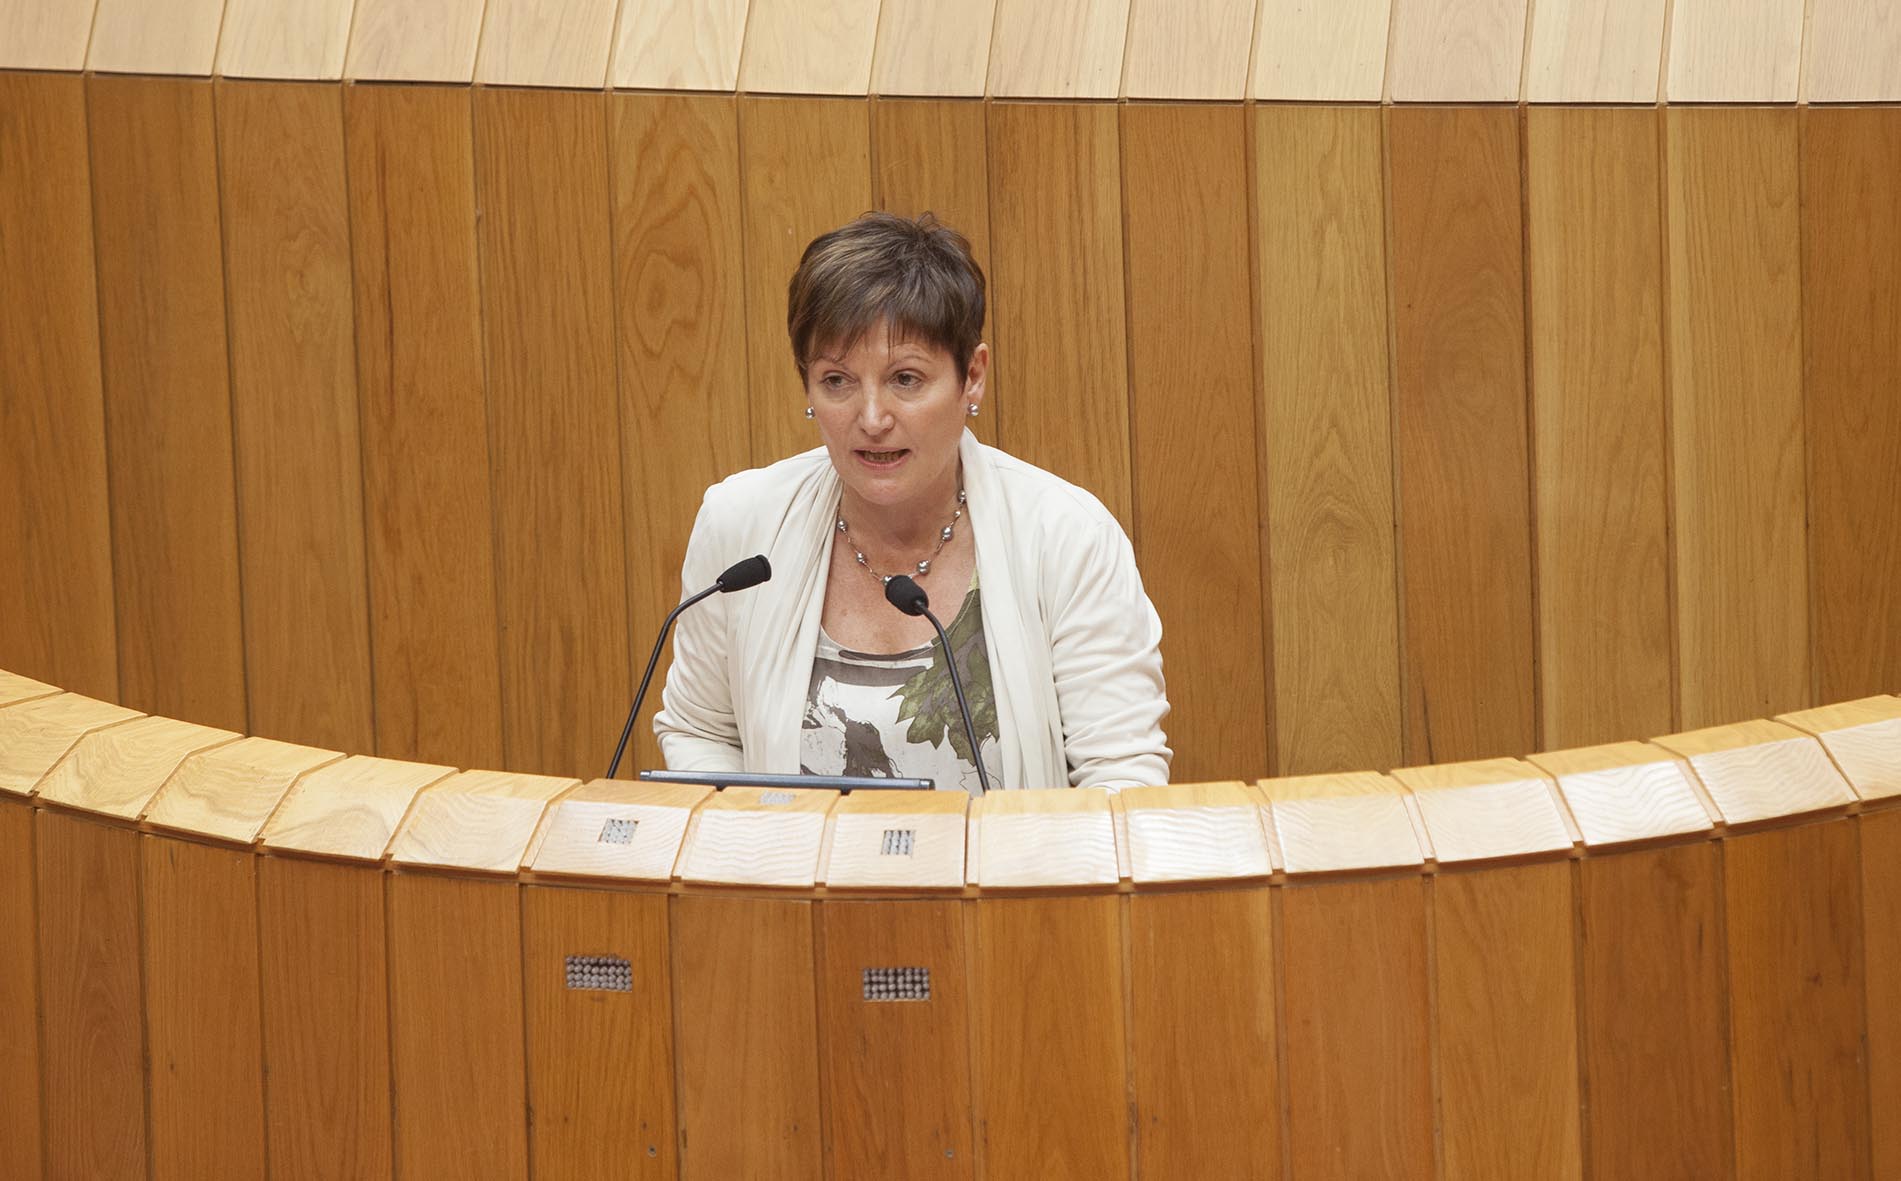 A conselleira de Sanidade, Rocío Mosquera Álvarez, informou hoxe, no Pleno do Parlamento de Galicia, das medidas postas en marcha polo seu departamento en relación ao virus do ébola.